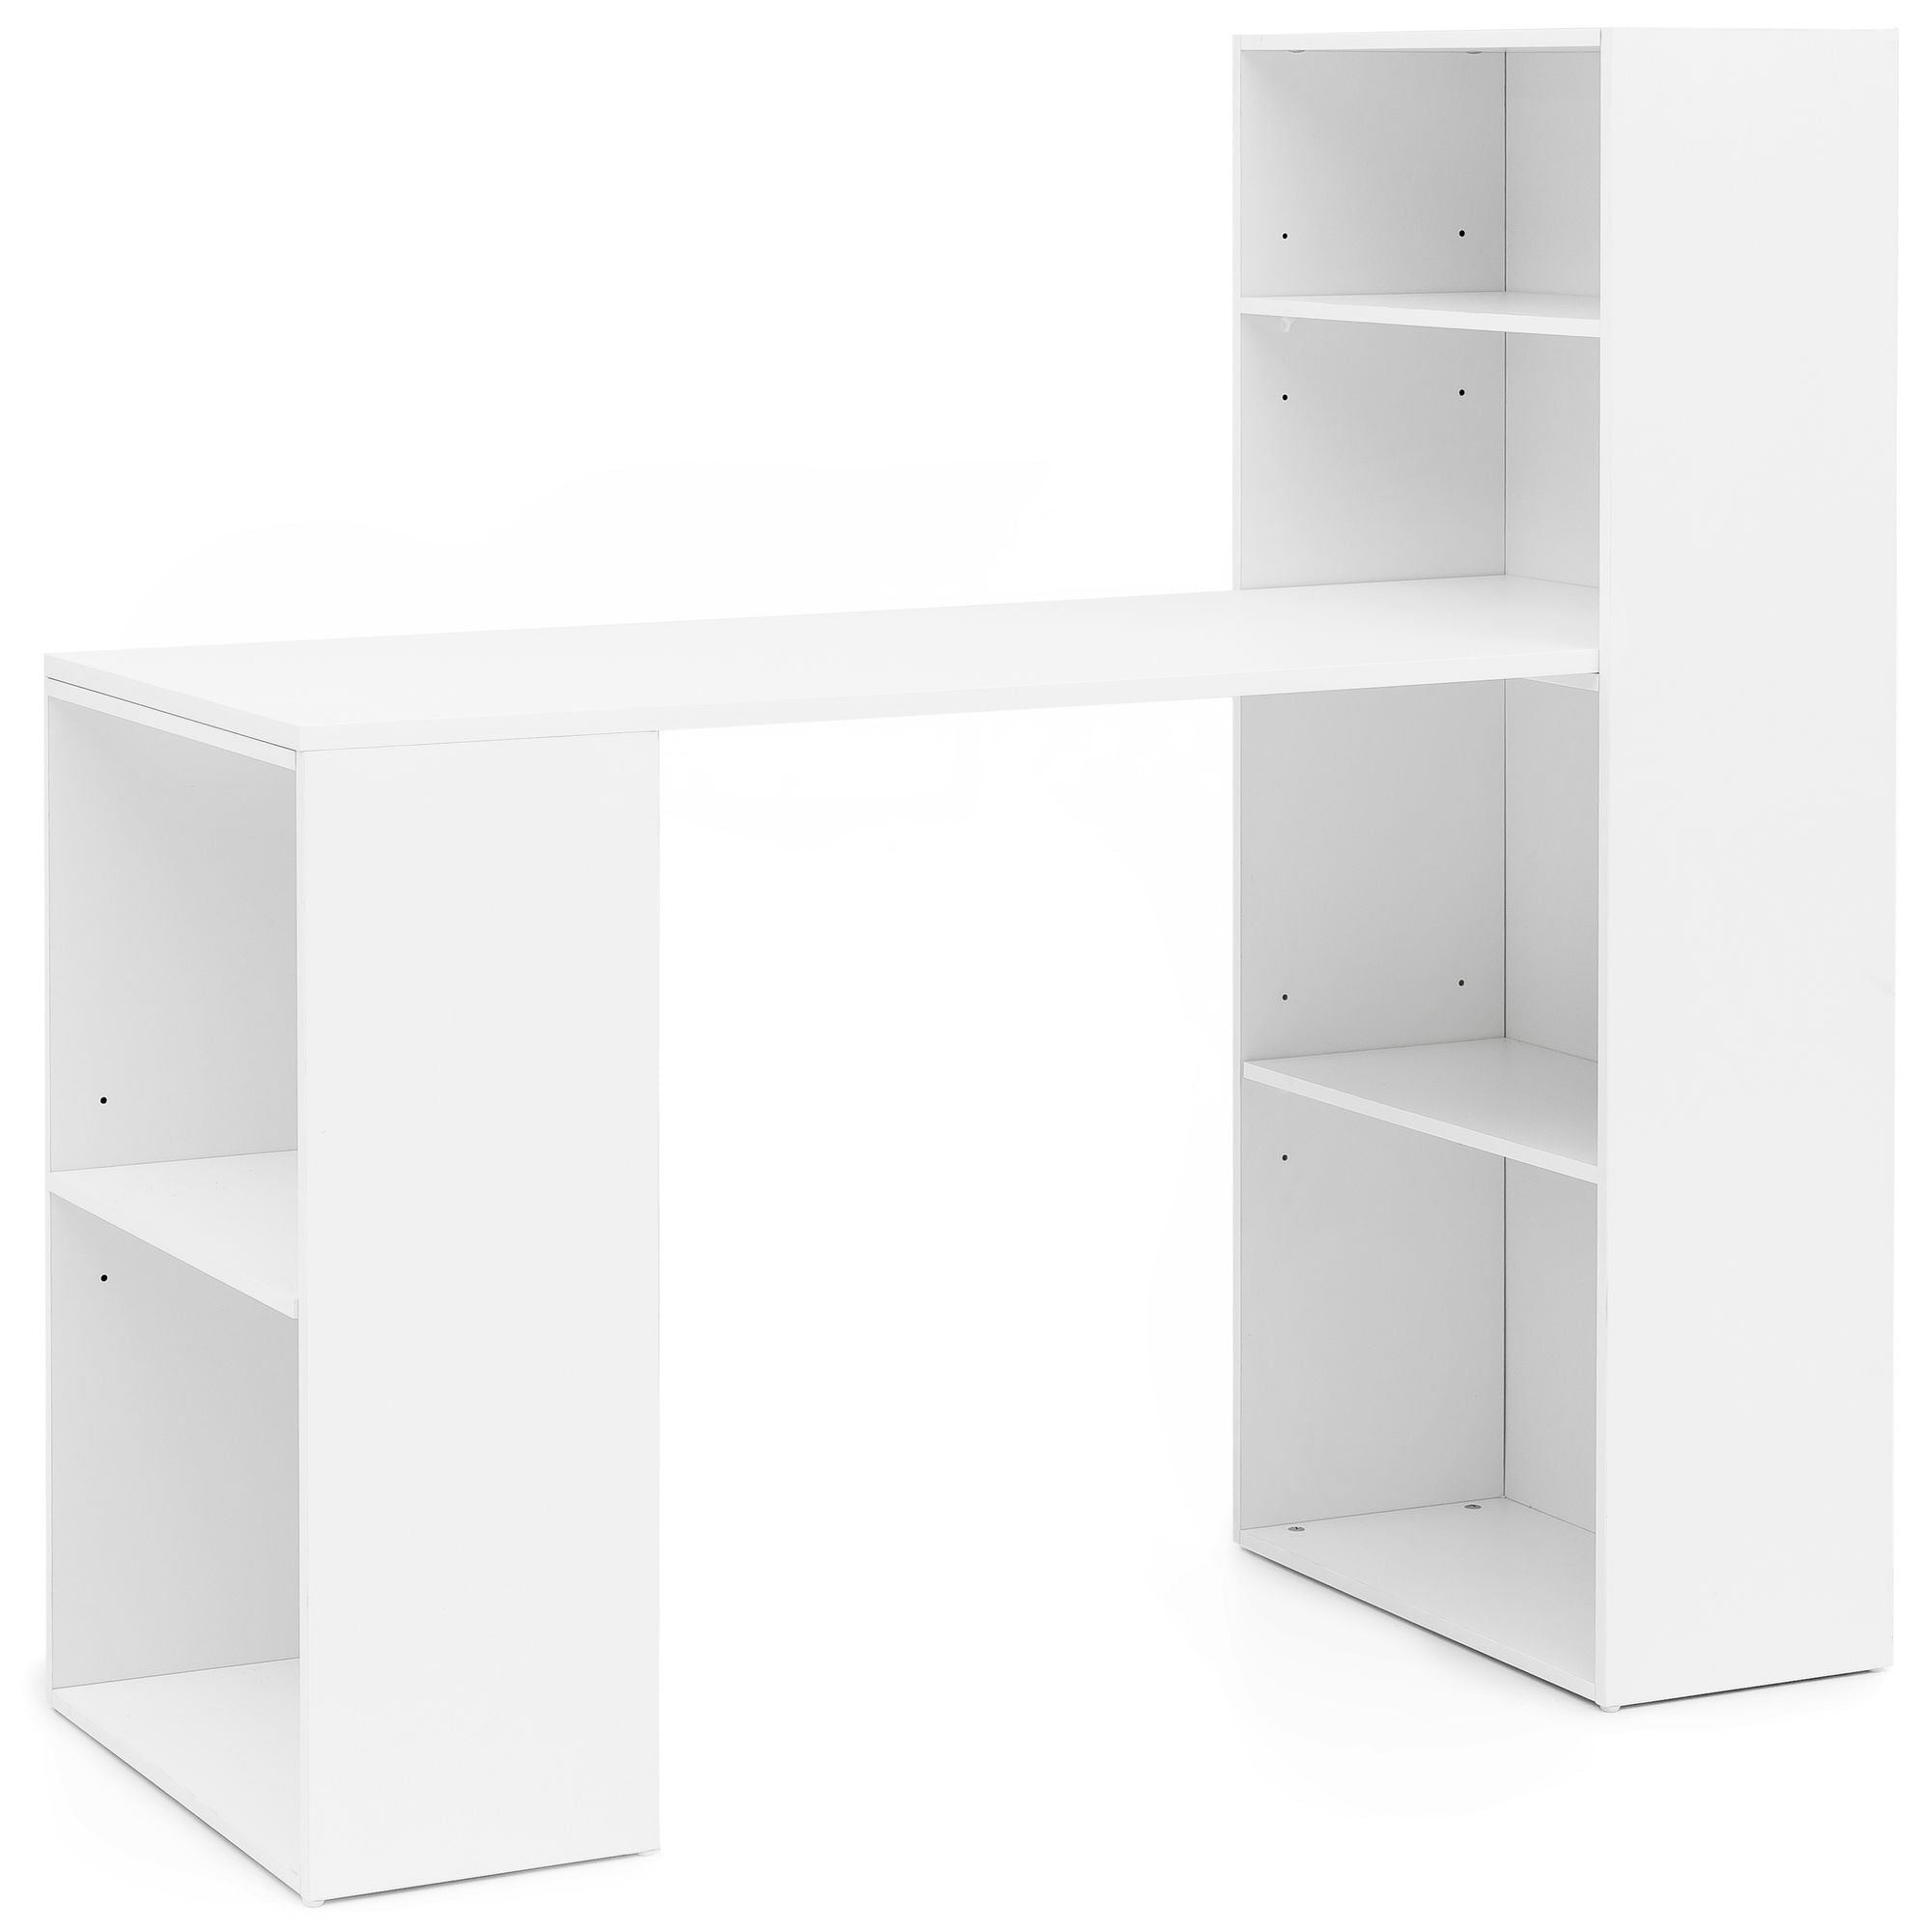 Skrivebord med reol, skandinavisk stil, 120 x 120 x 53 cm, hvid